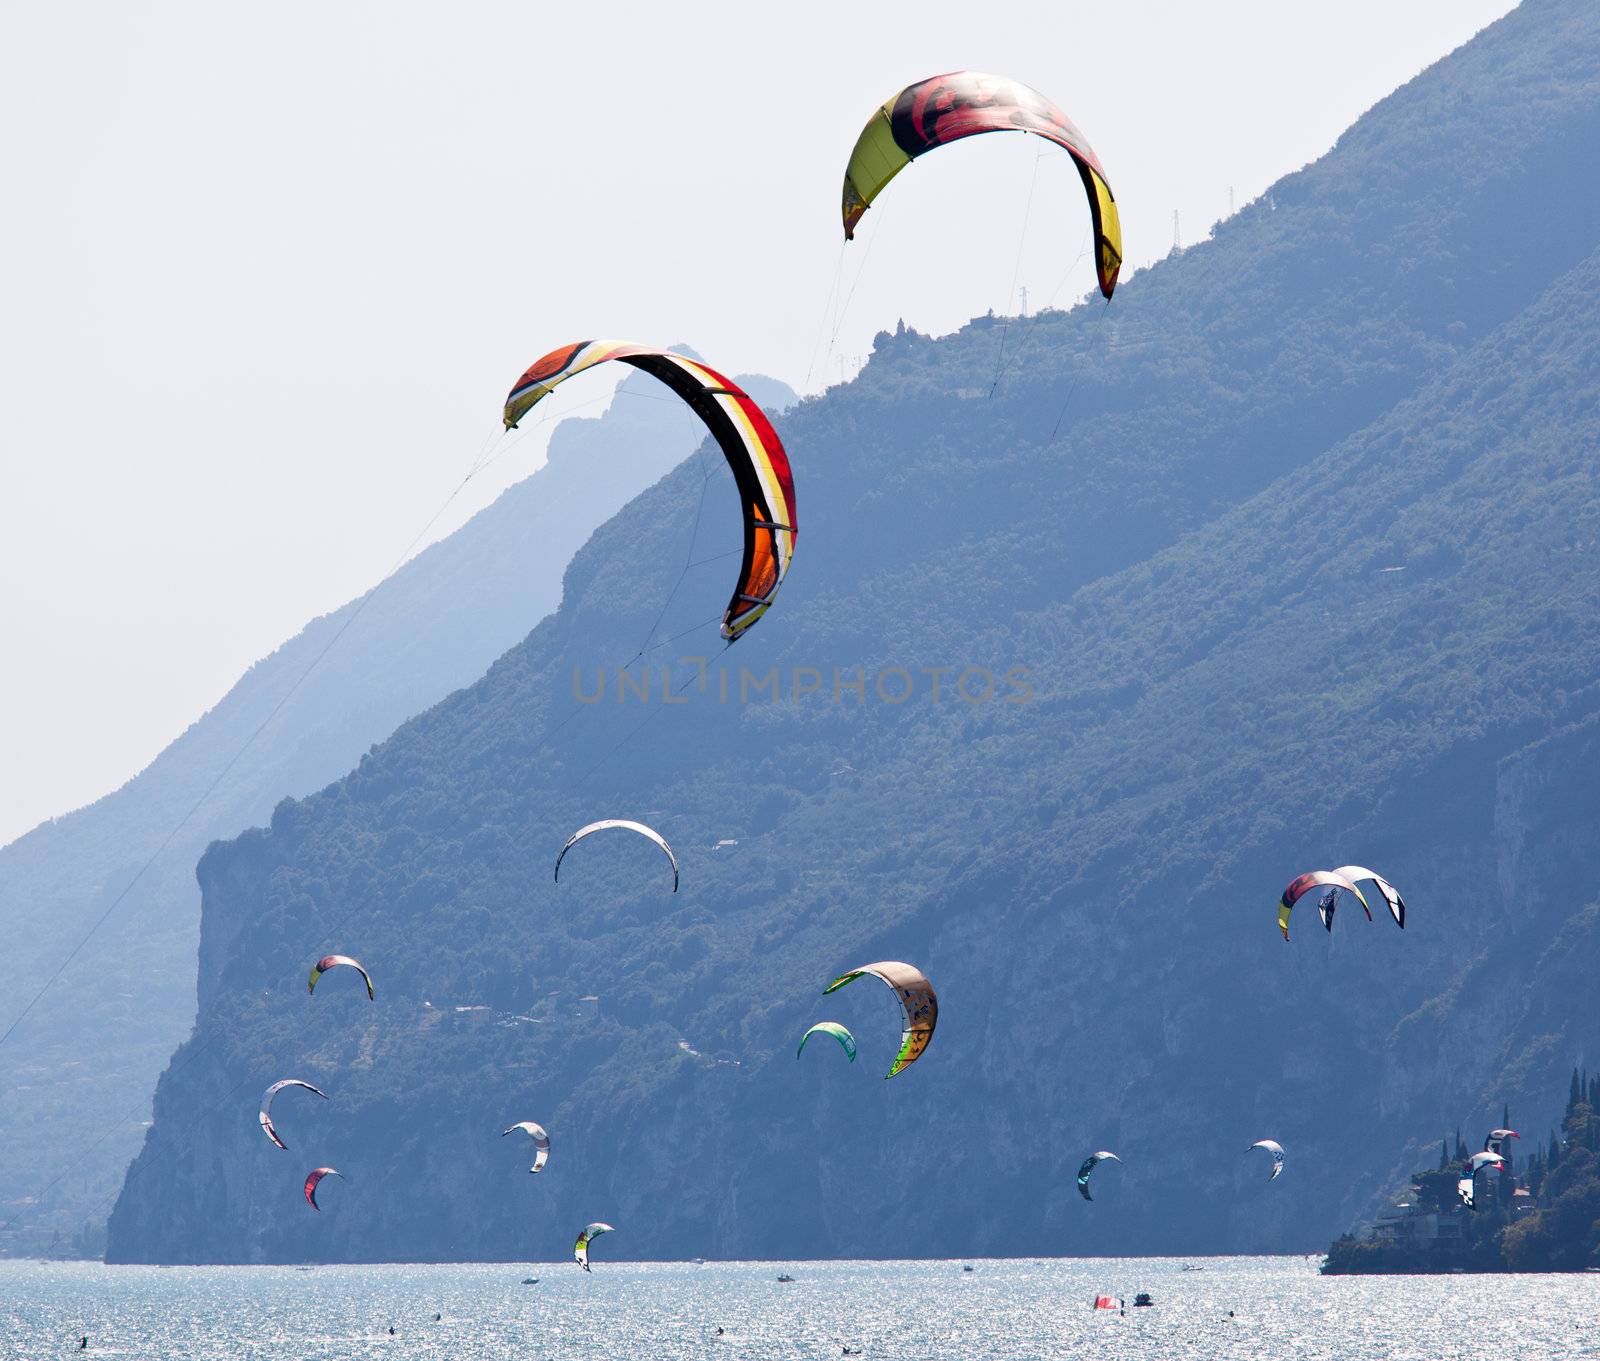 Parasurfing on Lake Garda by steheap